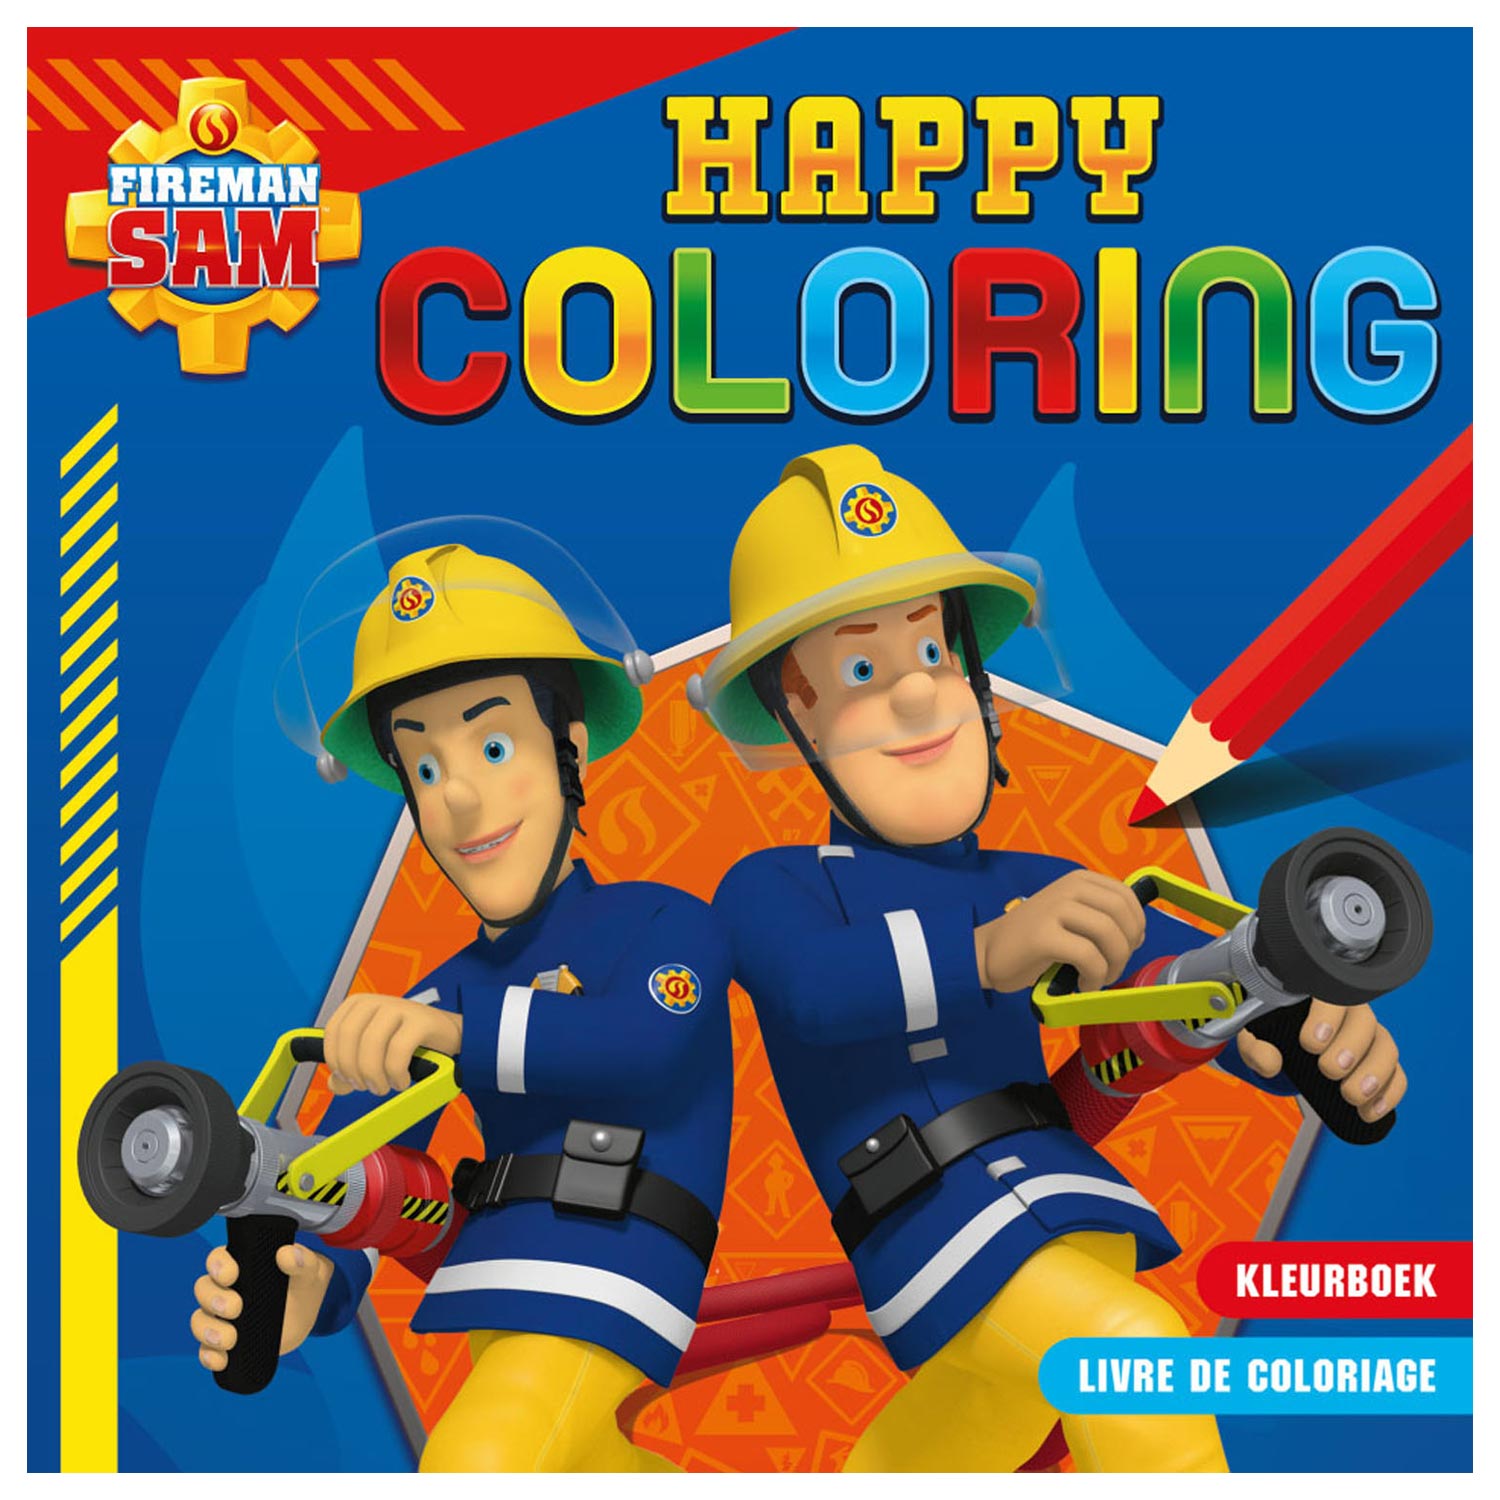 Sam le pompier heureux coloriage livre de coloriage